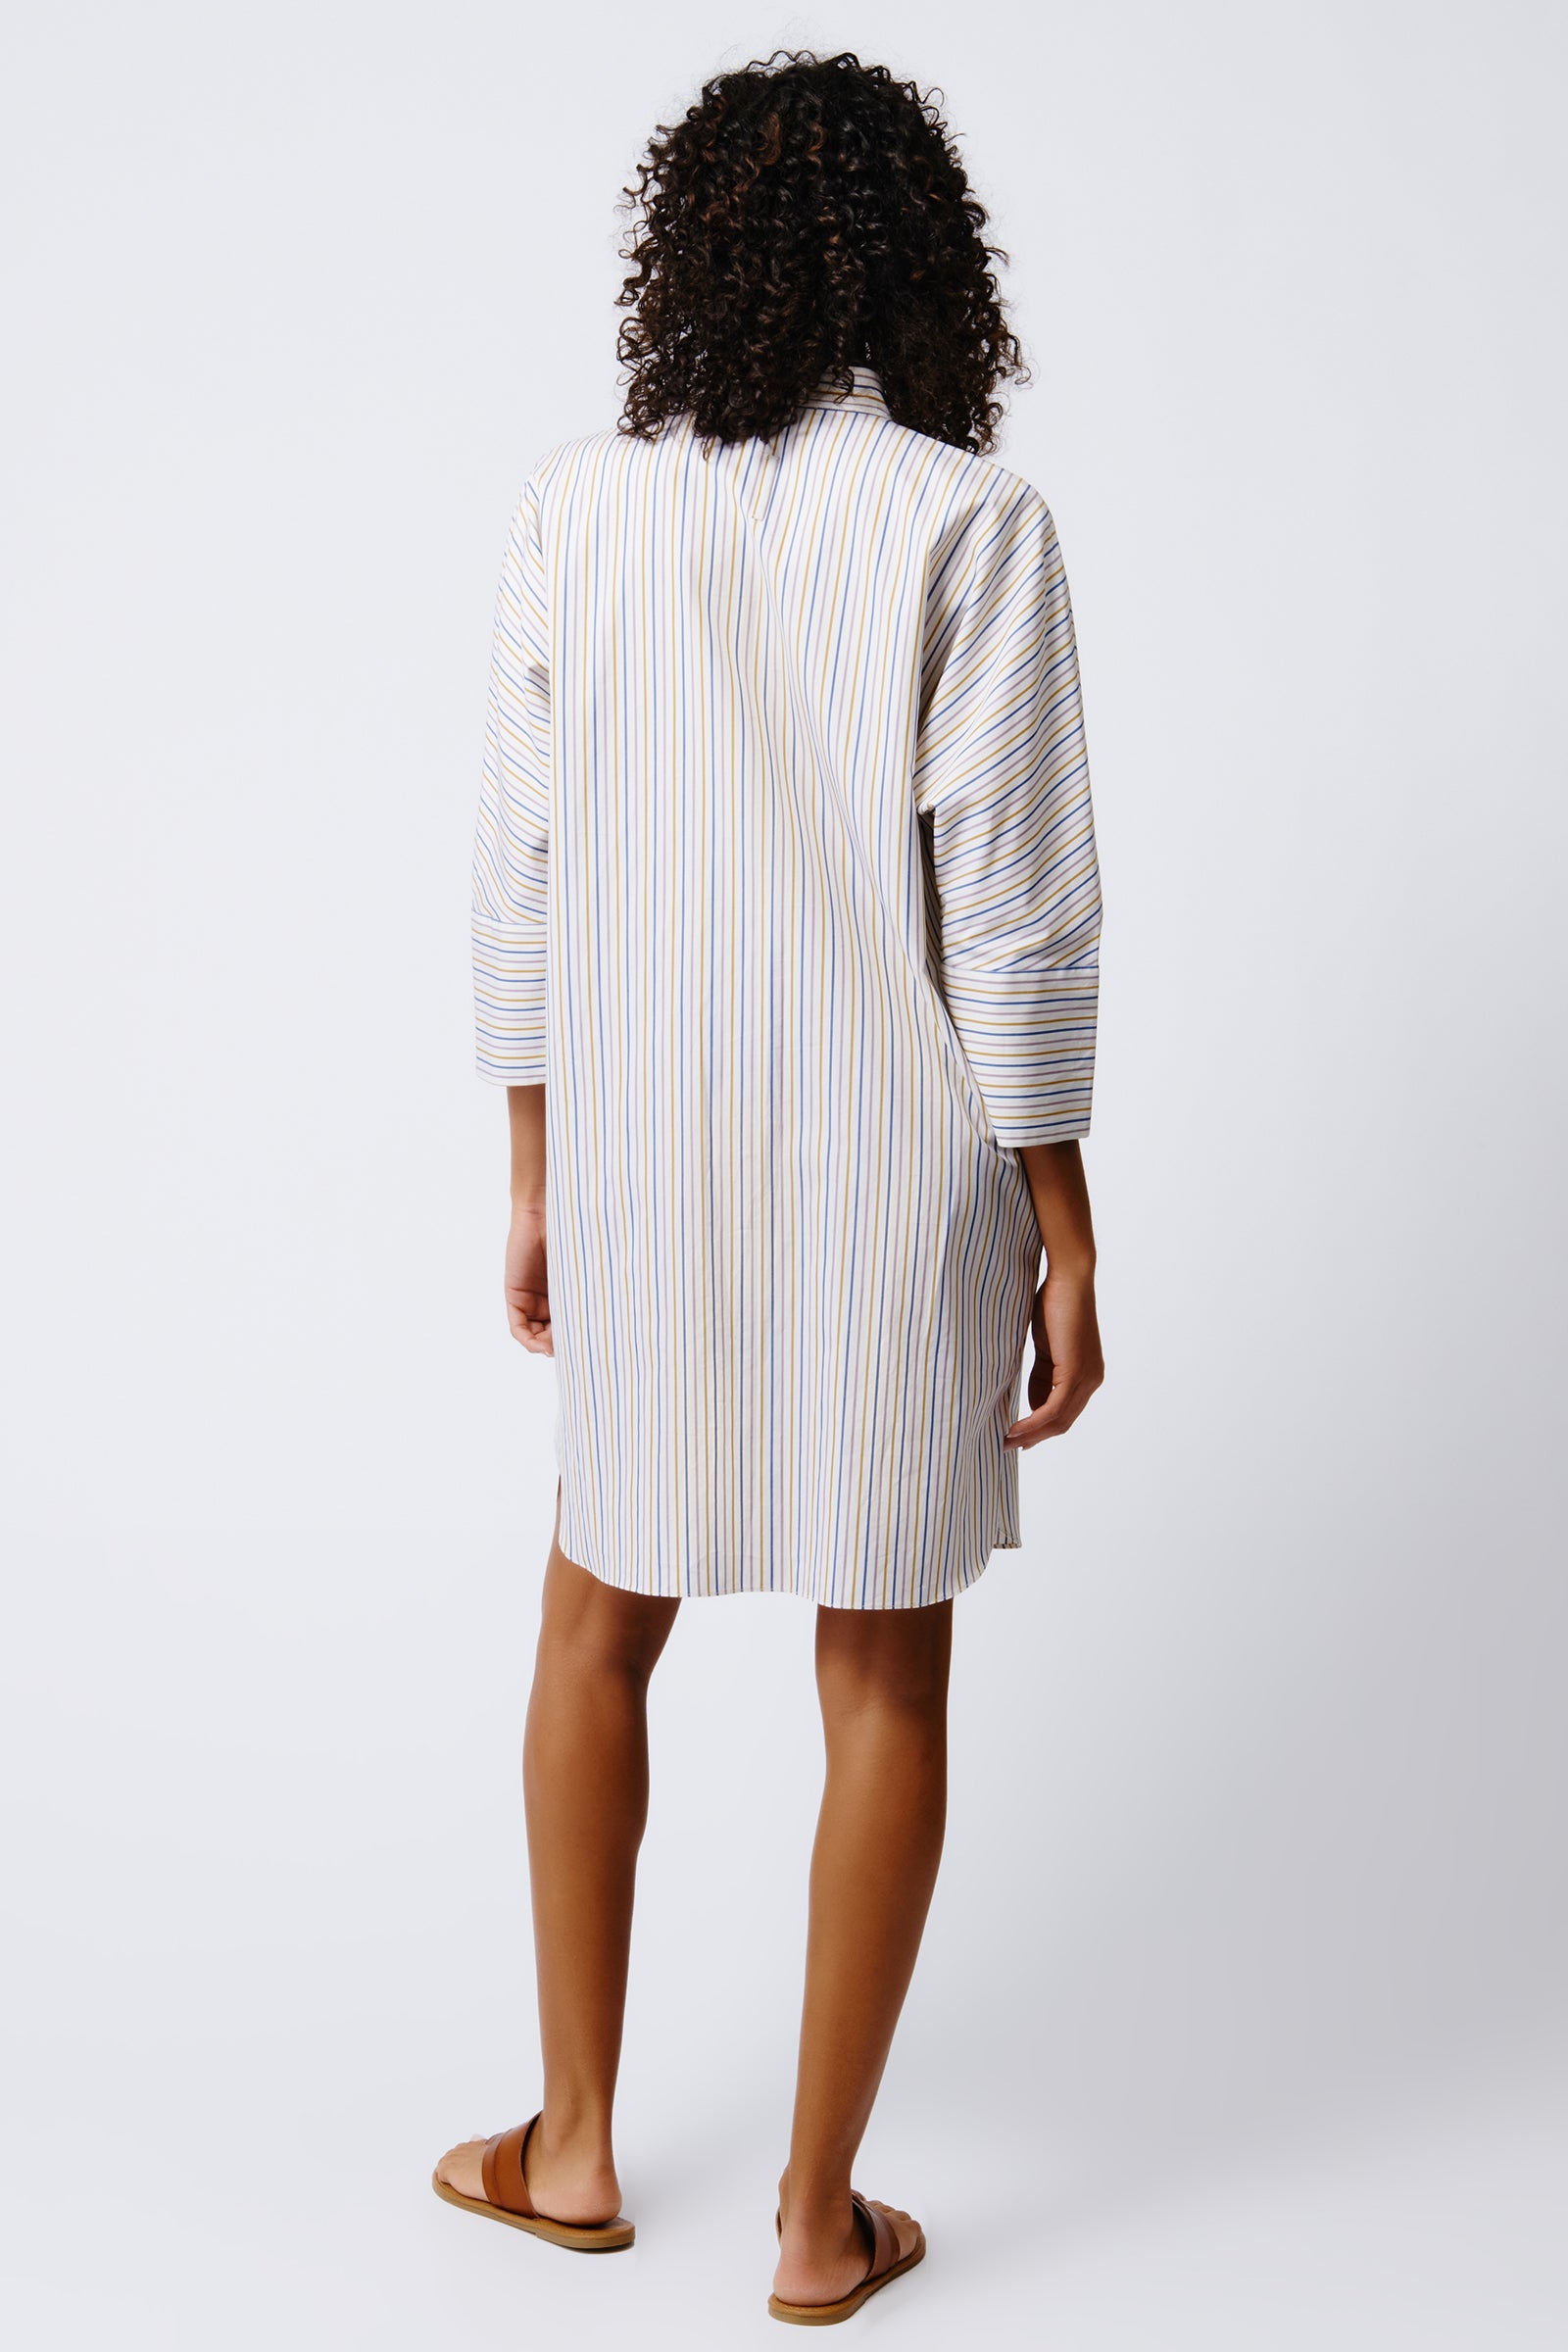 Kal Rieman June Shirt Dress in Multi Stripe on Model Front View Crop 4